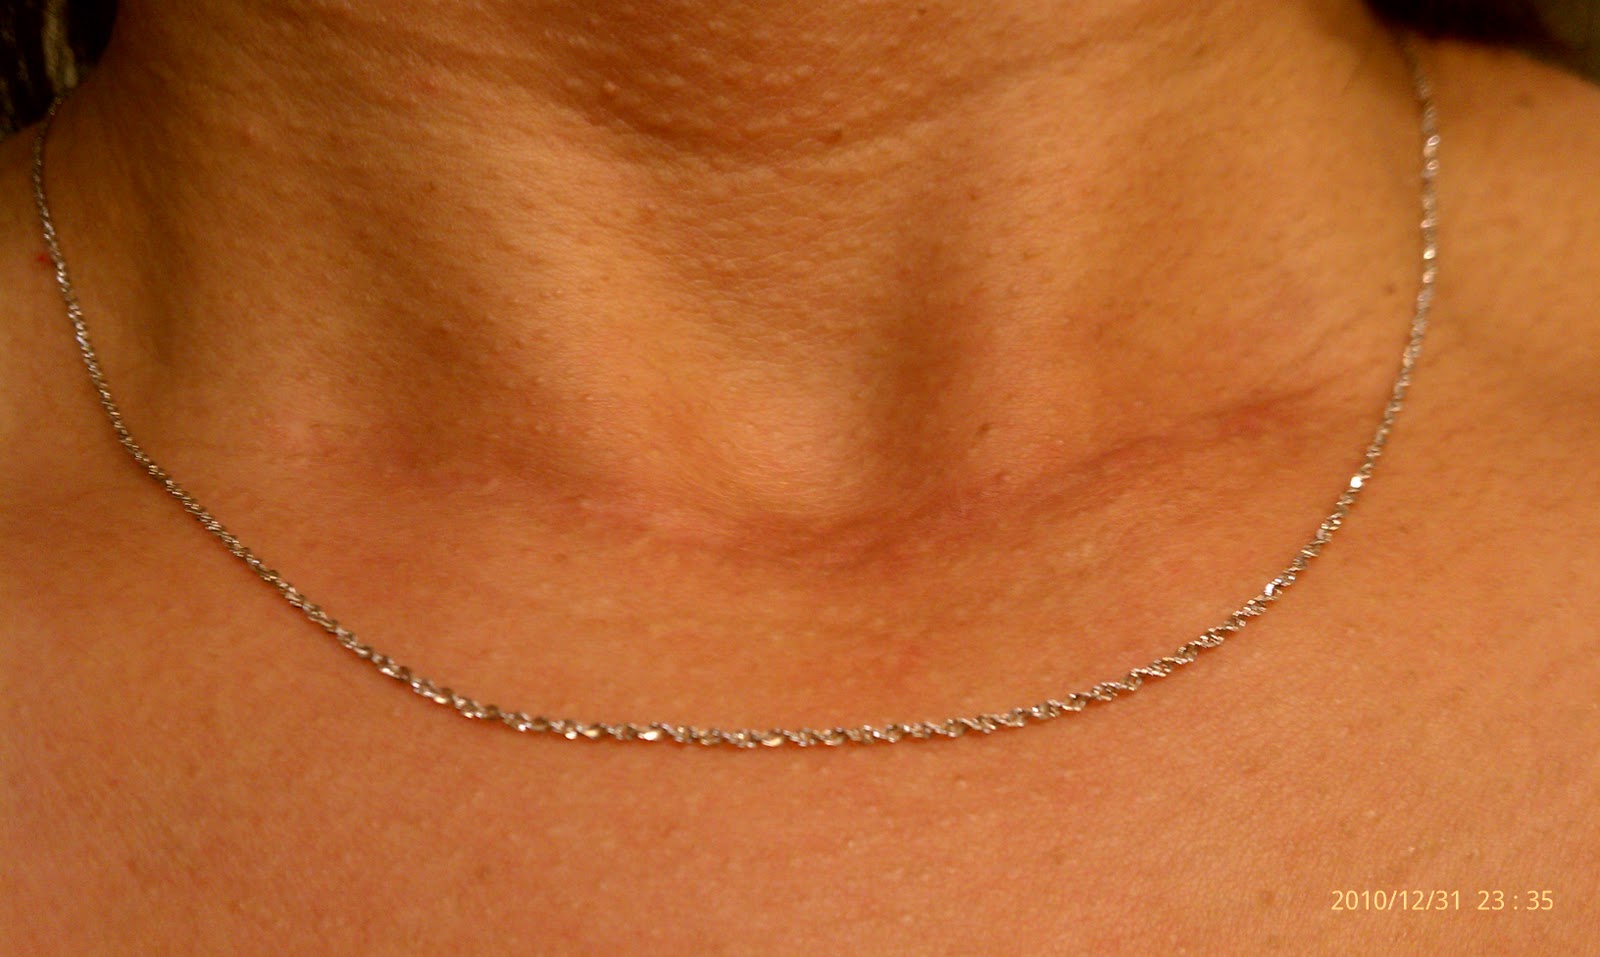 How does my neck look?: How does my neck look? 1/1/11